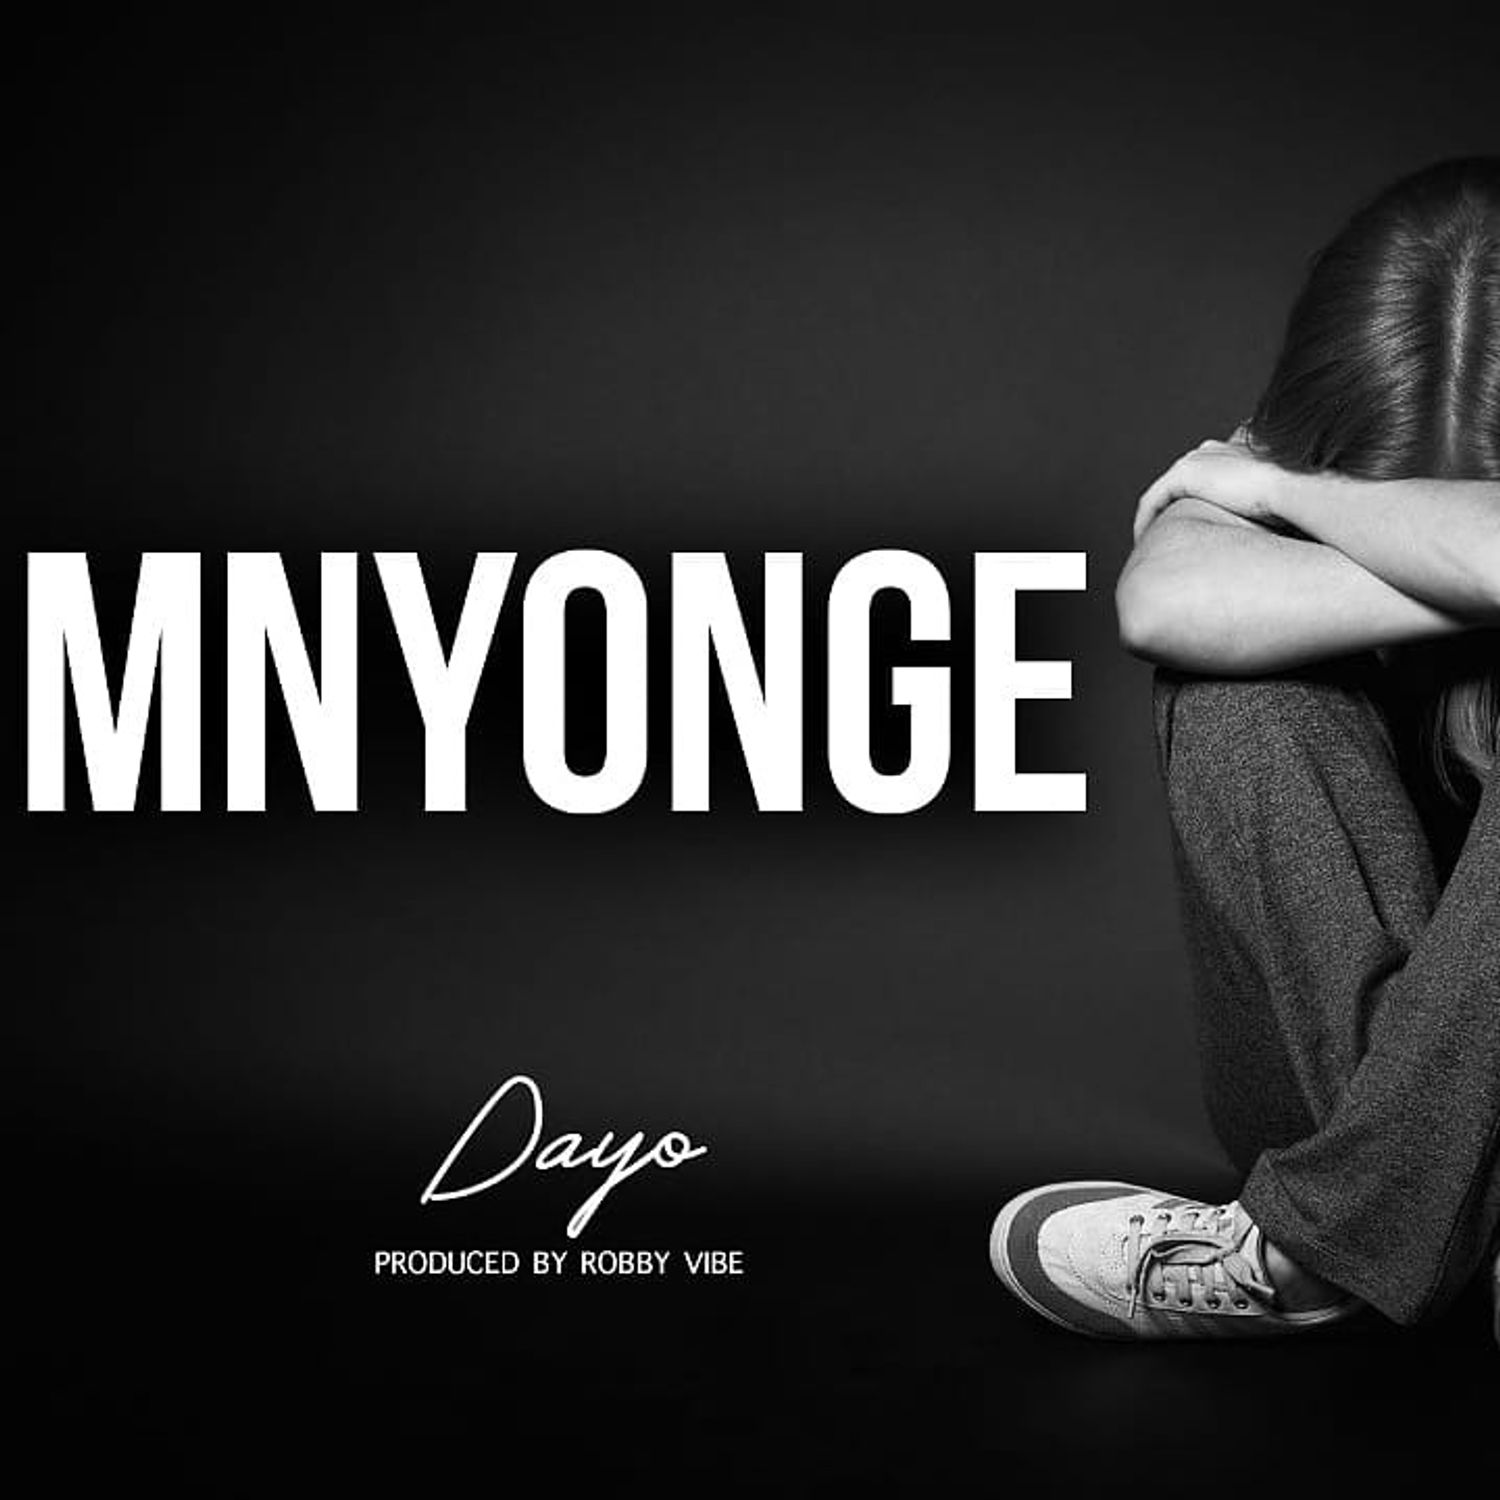 Dayoo - Mnyonge